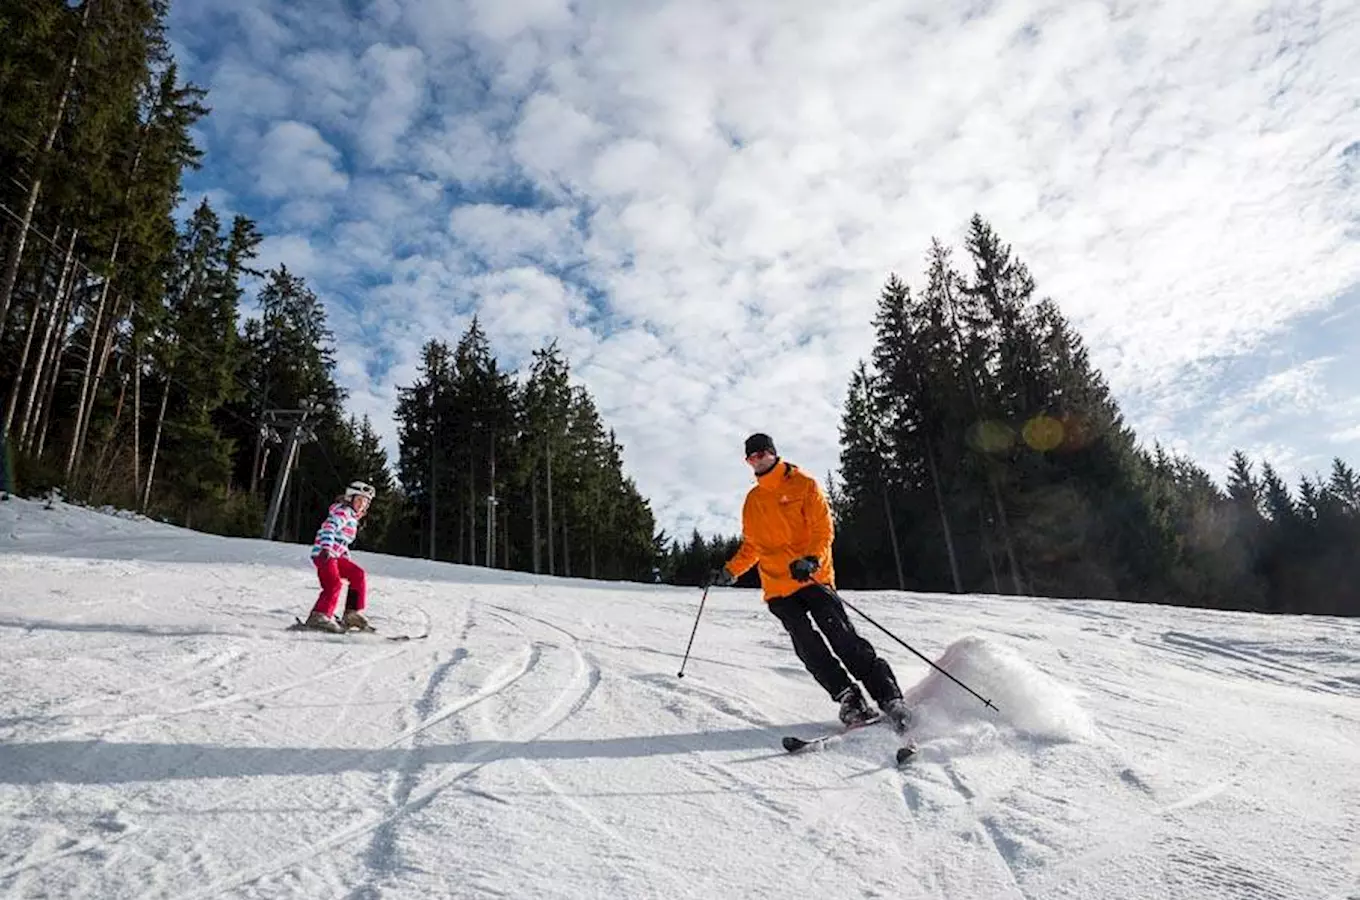 Sezóna ve Ski areálu Razula vrcholí: o víkendu bude testování skialpů a dětský závod